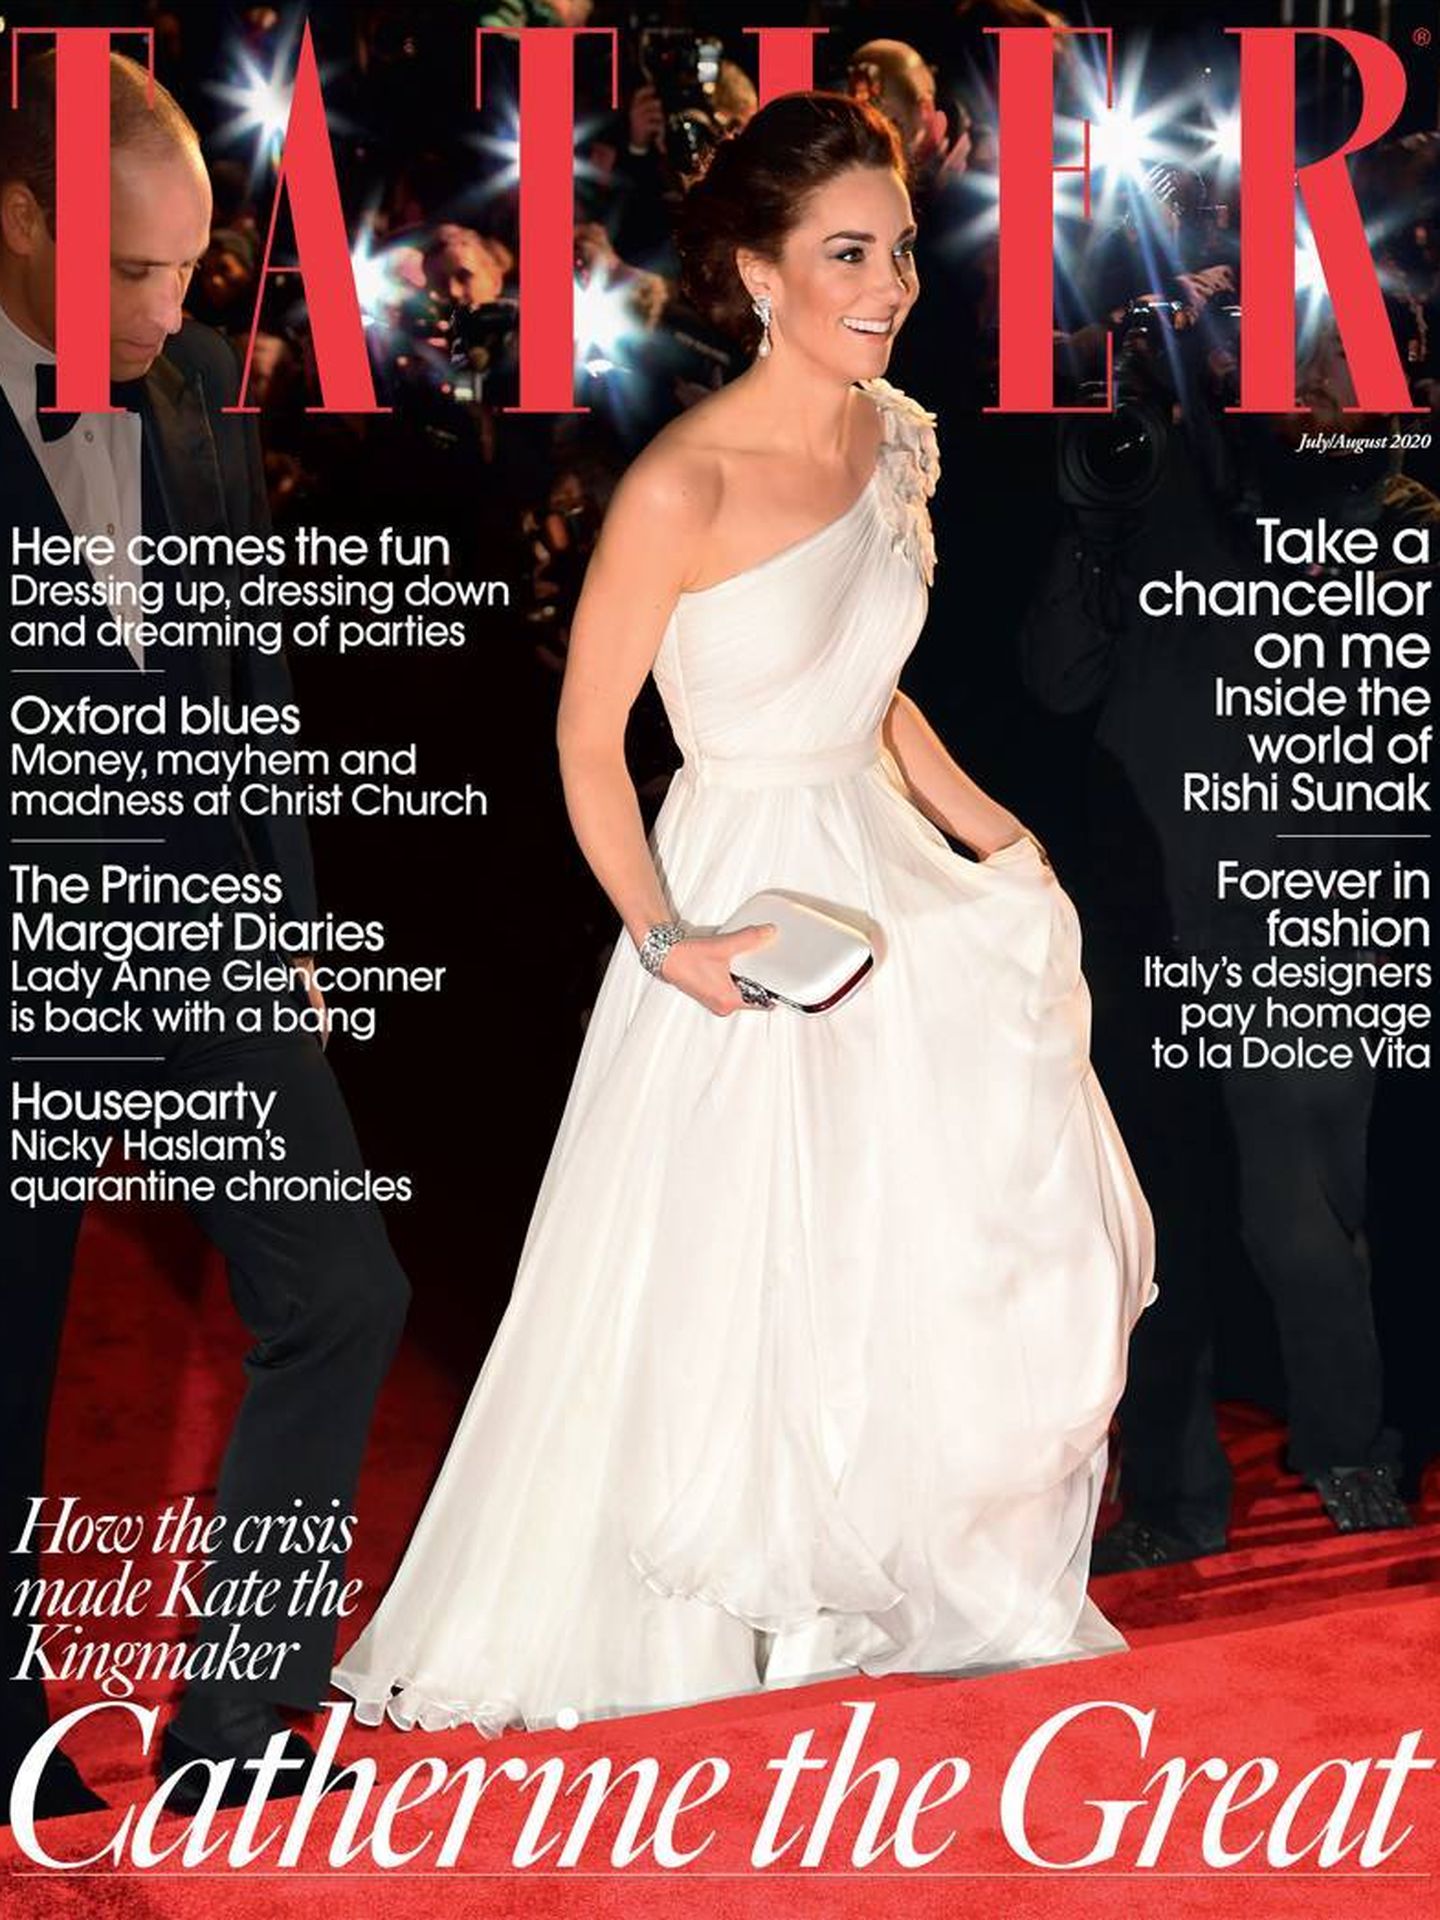 Portada de la edición de 'Tatler', con Kate Middleton como protagonista.